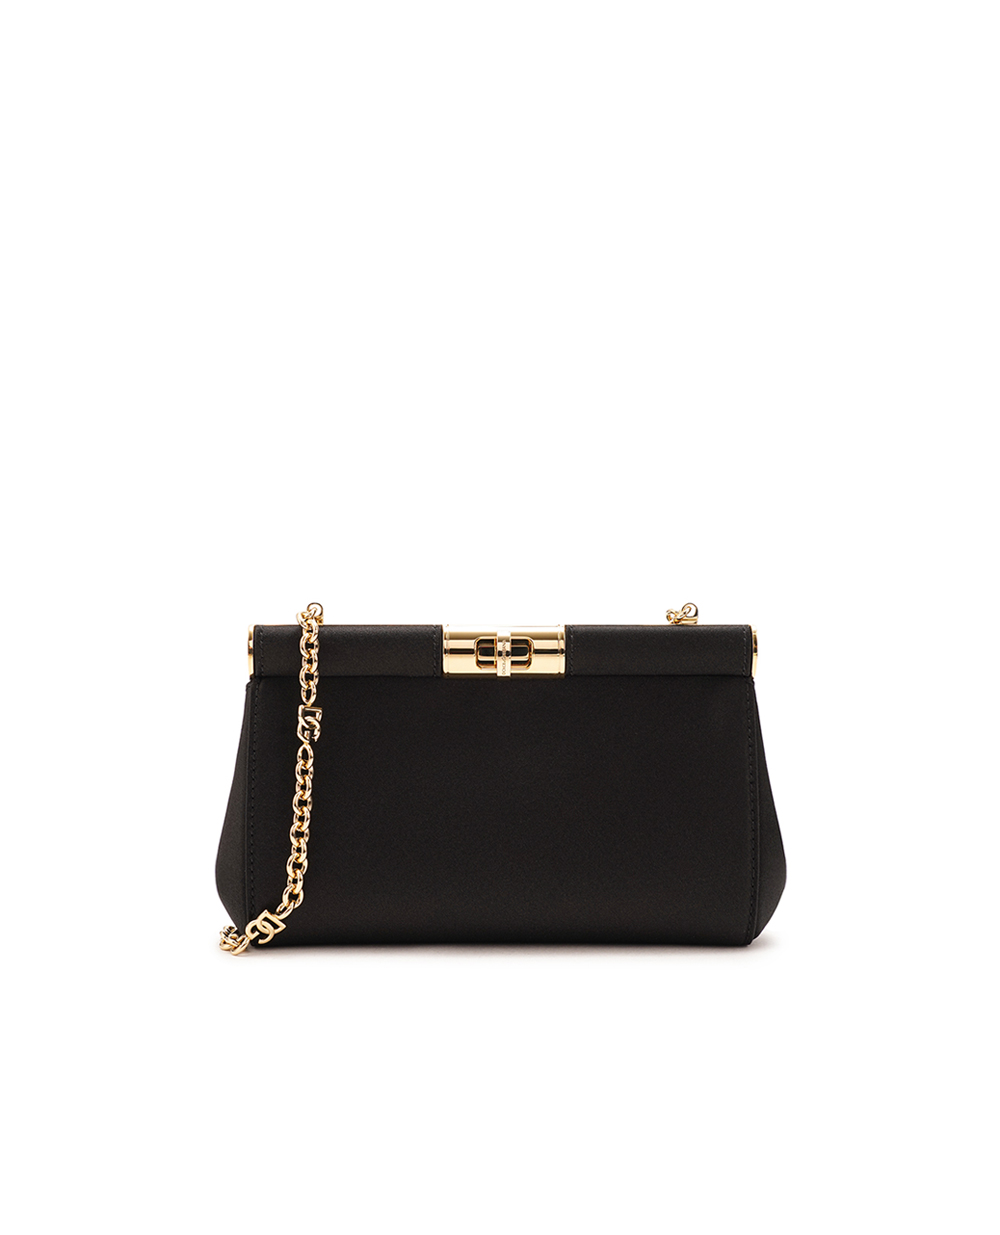 Кожаная сумка Marlene Small Dolce&Gabbana BB7635-A7630, черный цвет • Купить в интернет-магазине Kameron